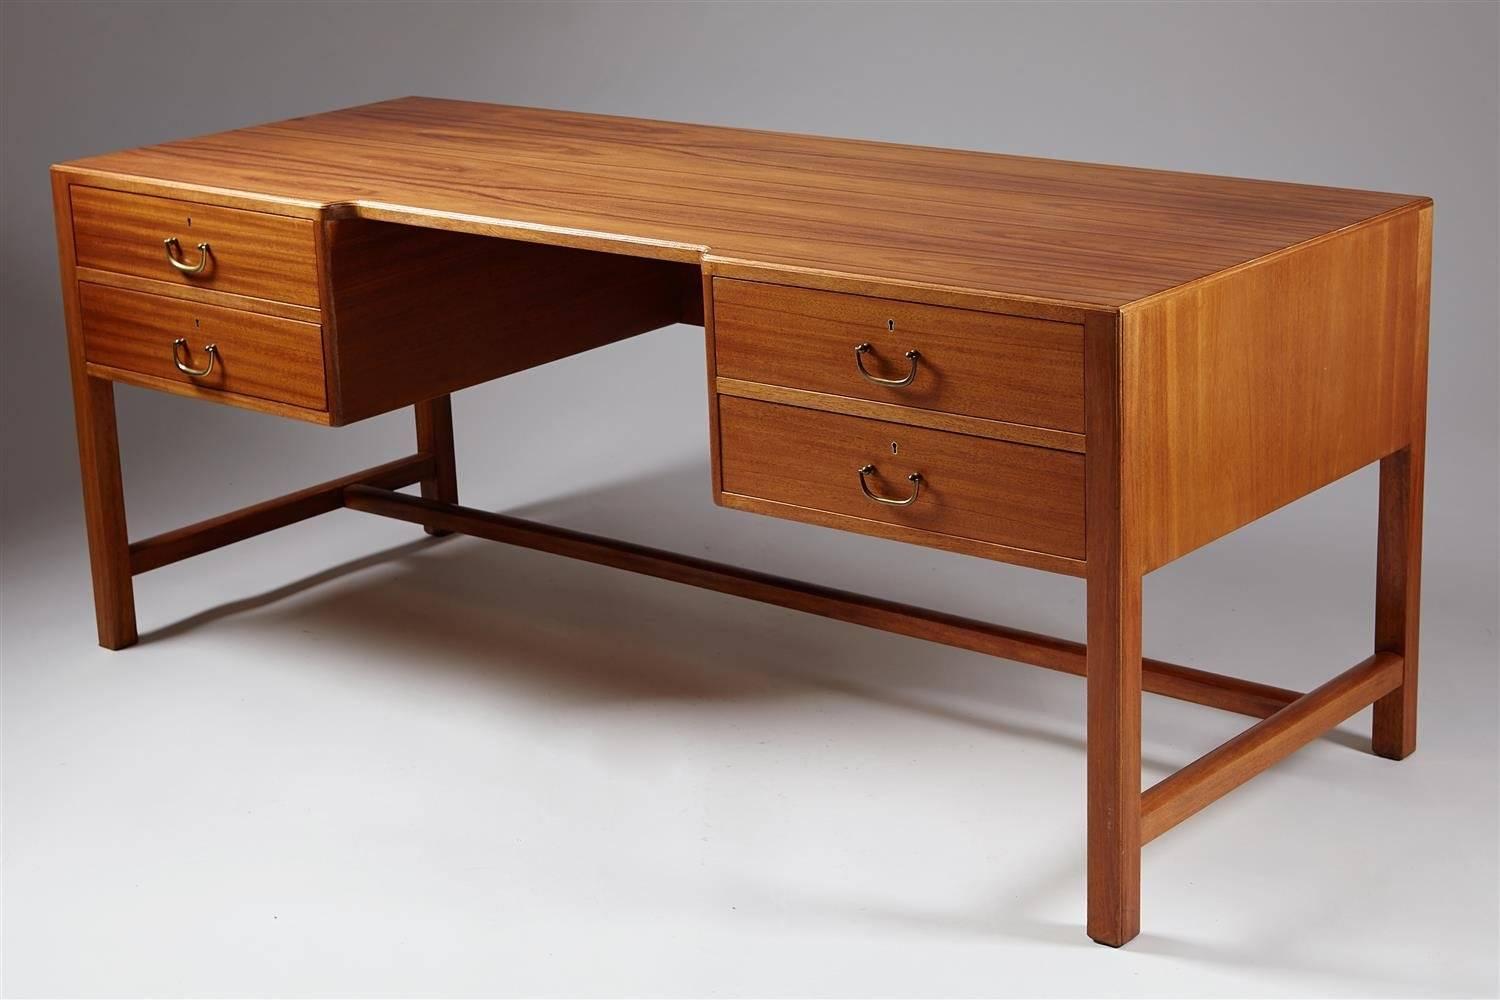 Scandinavian Modern Desk Designed by Josef Frank for Haus Und Garten, Austria, 1932